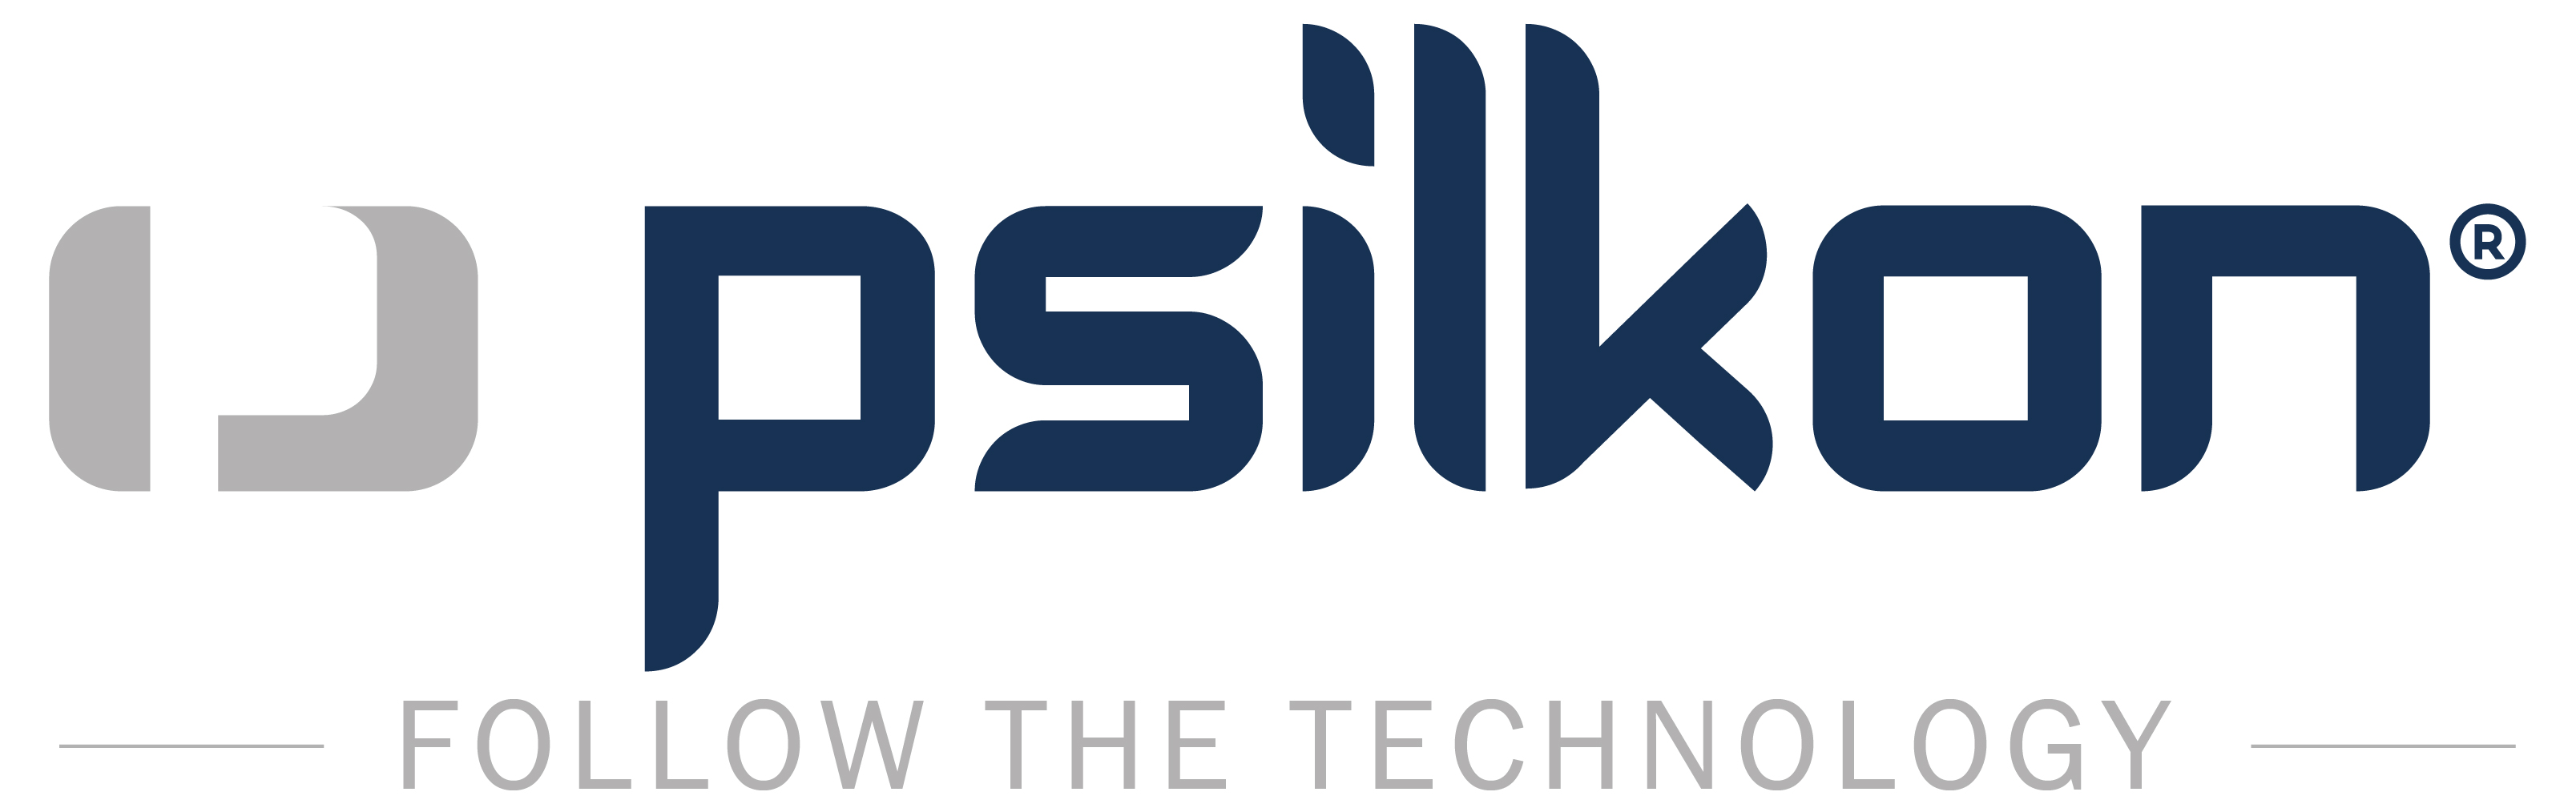 Psilkon GmbH & Co. KG